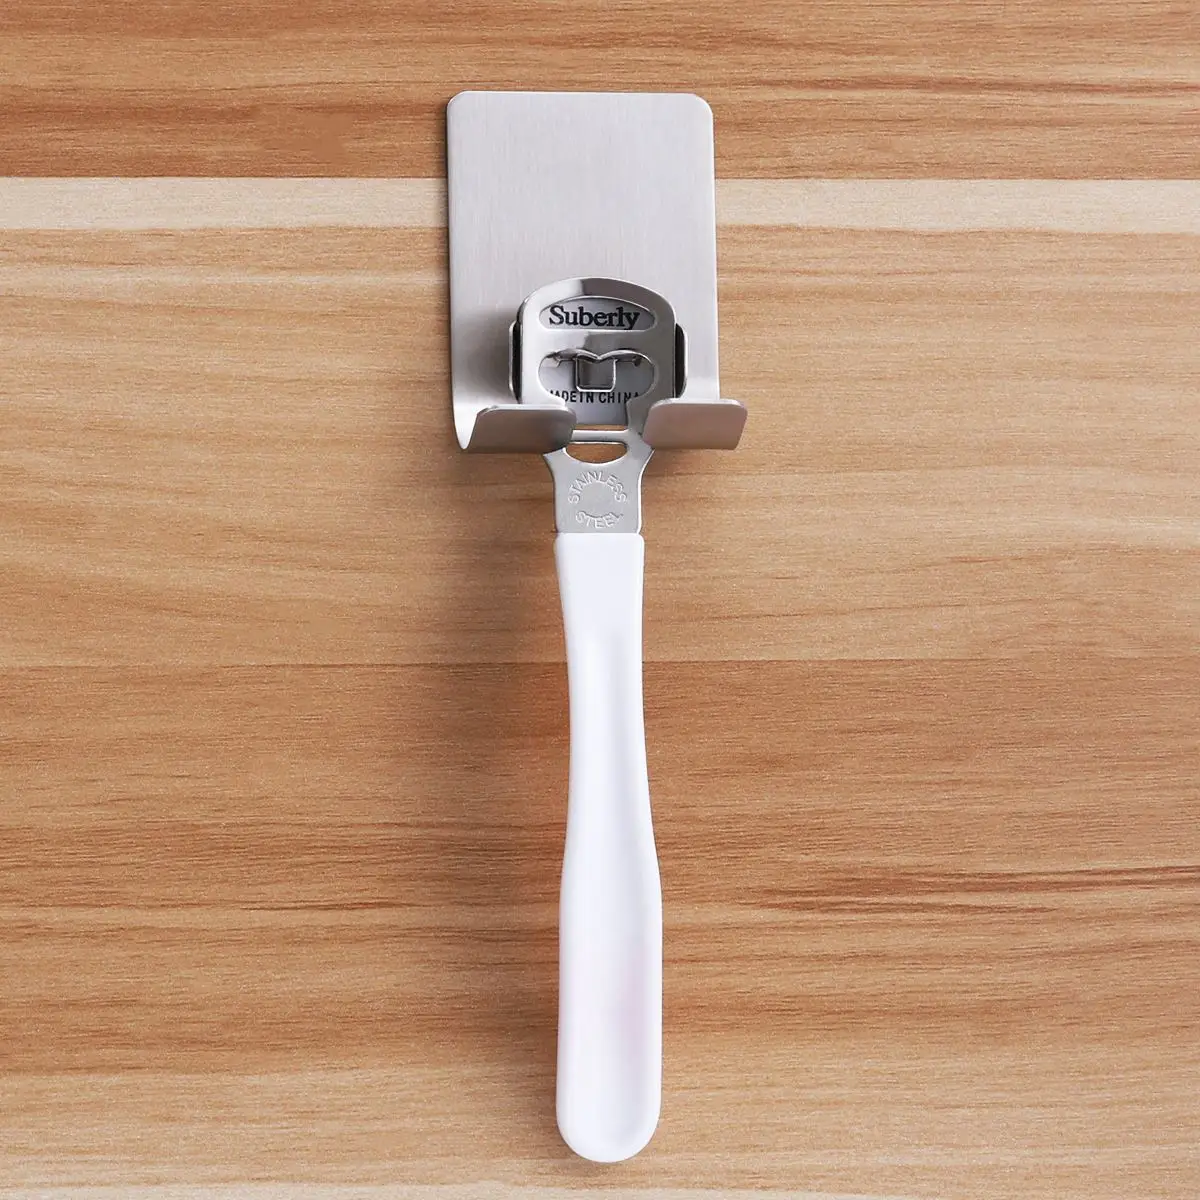 BESTONZON 1 шт. держатель для бритвы из нержавеющей стали прочный самоклеящийся водонепроницаемый держатель для полотенец всасывающие крючки для стены двери ванной комнаты